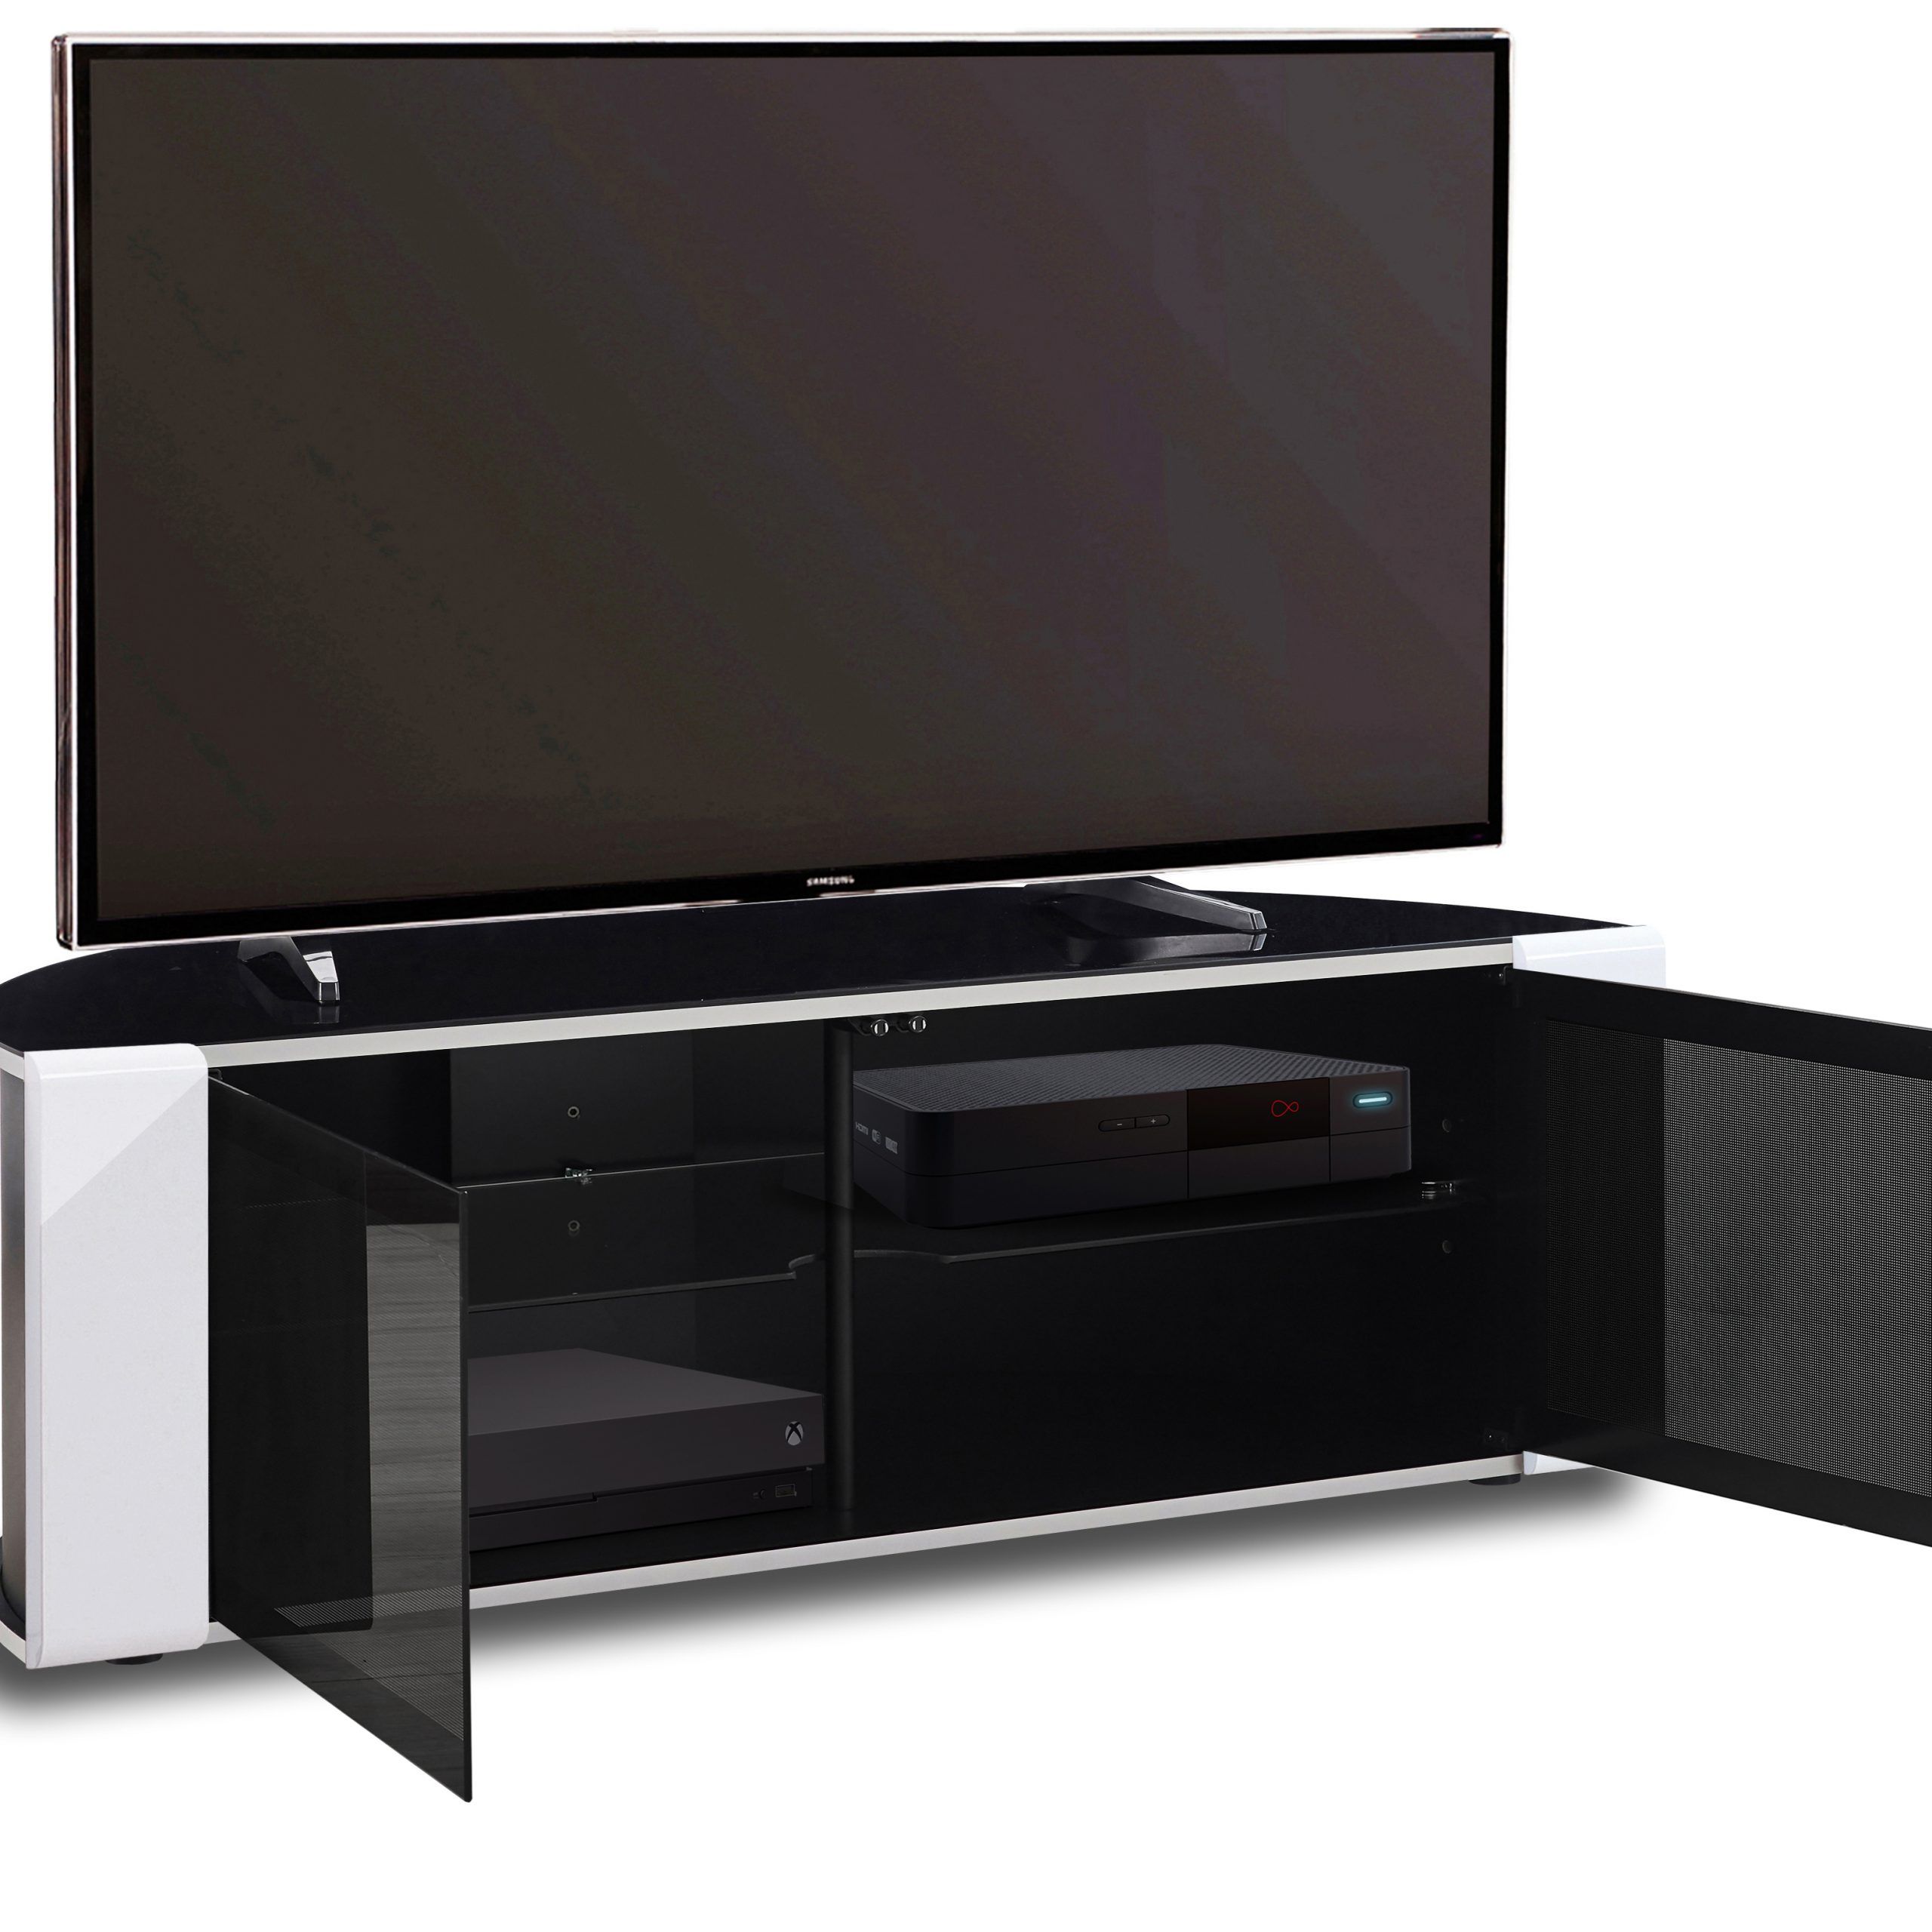 Mda Designs Sirius 850 Gloss Black & White Beam Thru 26 With Regard To Beam Thru Tv Stand (Photo 6 of 15)